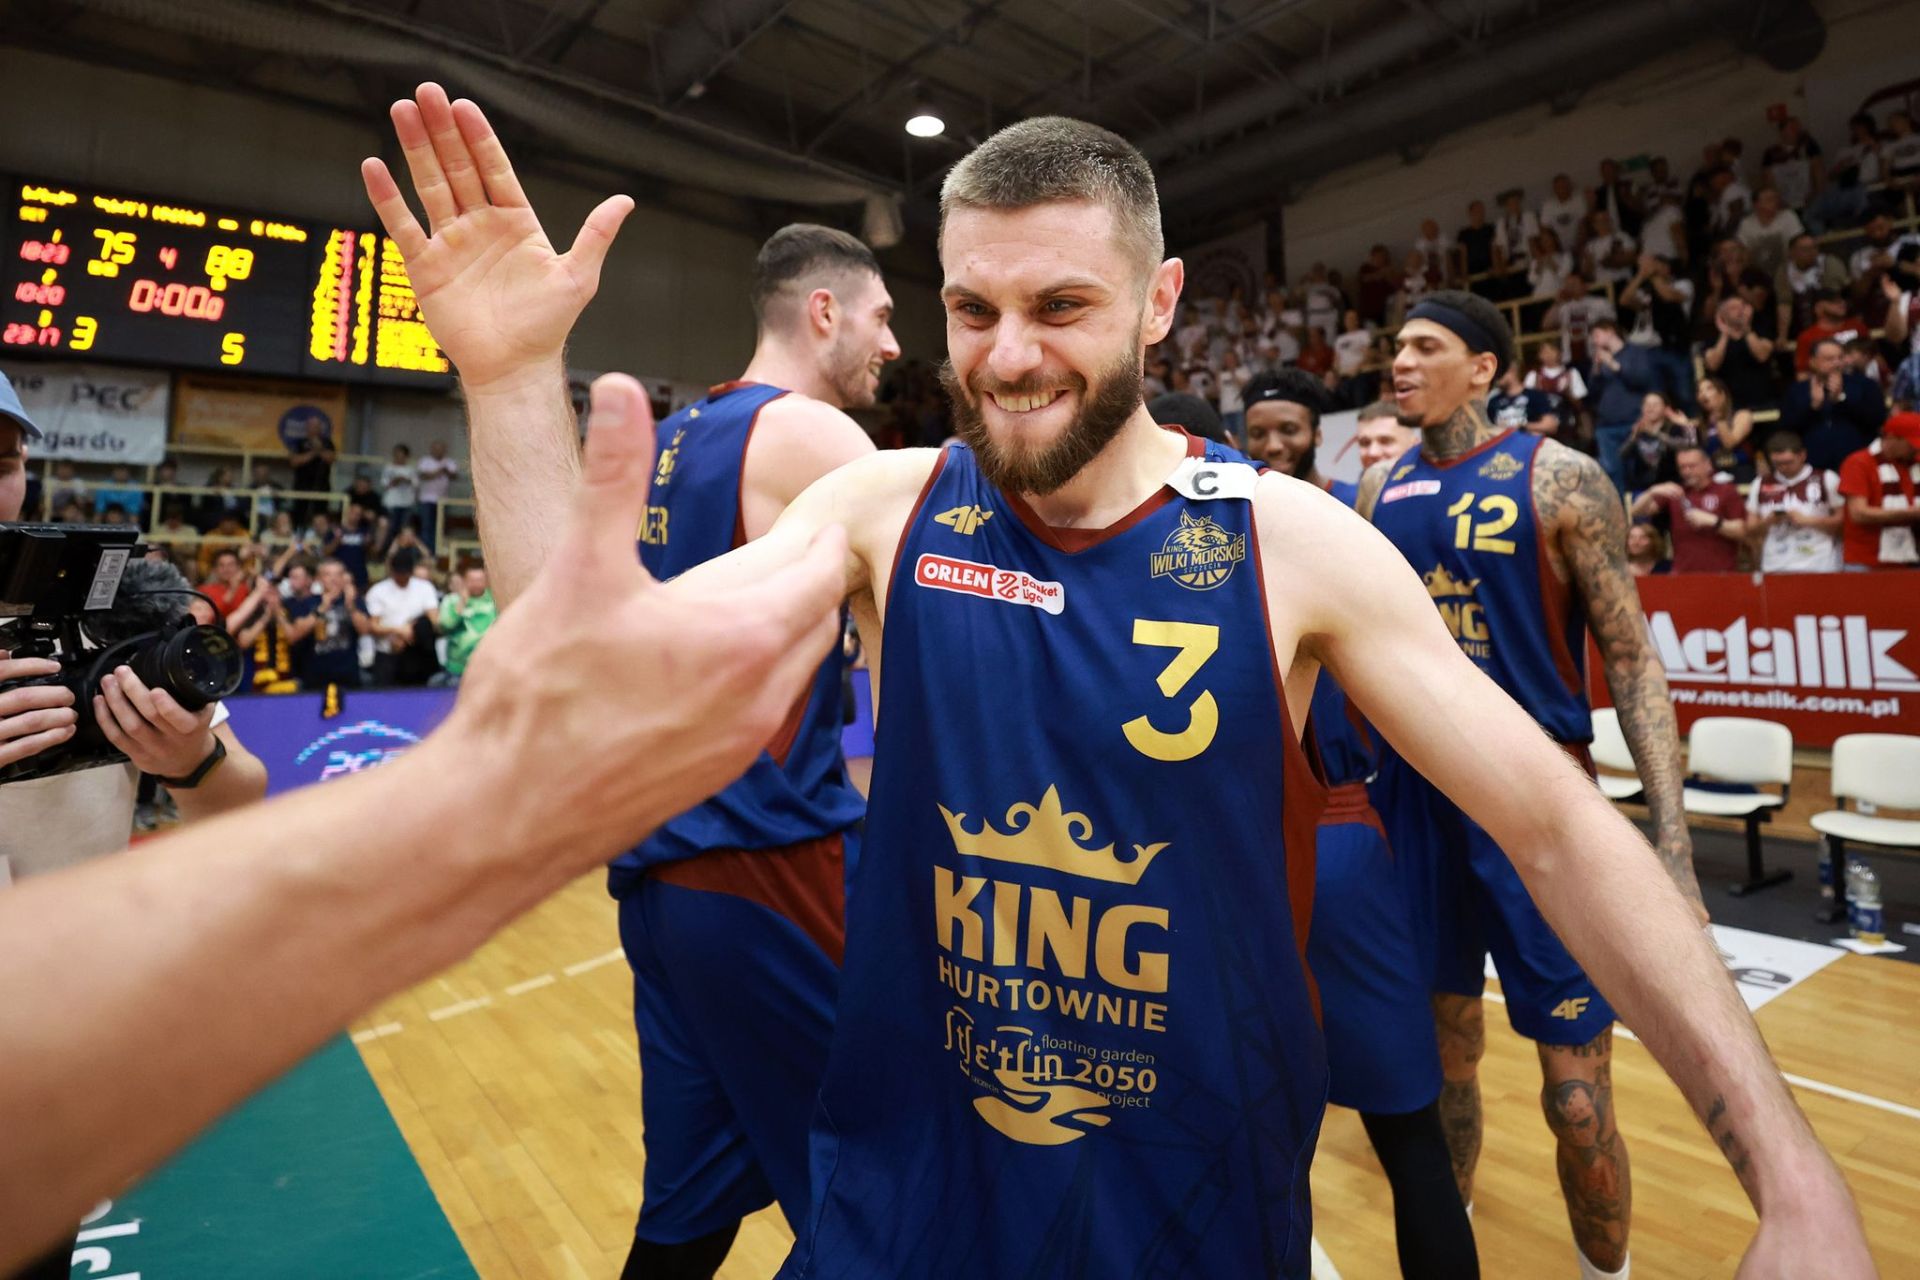 Koszykarze Kinga Szczecin wygrali z Treflem Sopot 75:59 (15:14, 19:8, 23:20, 18:17) w trzecim meczu finałowym ekstraklasy.